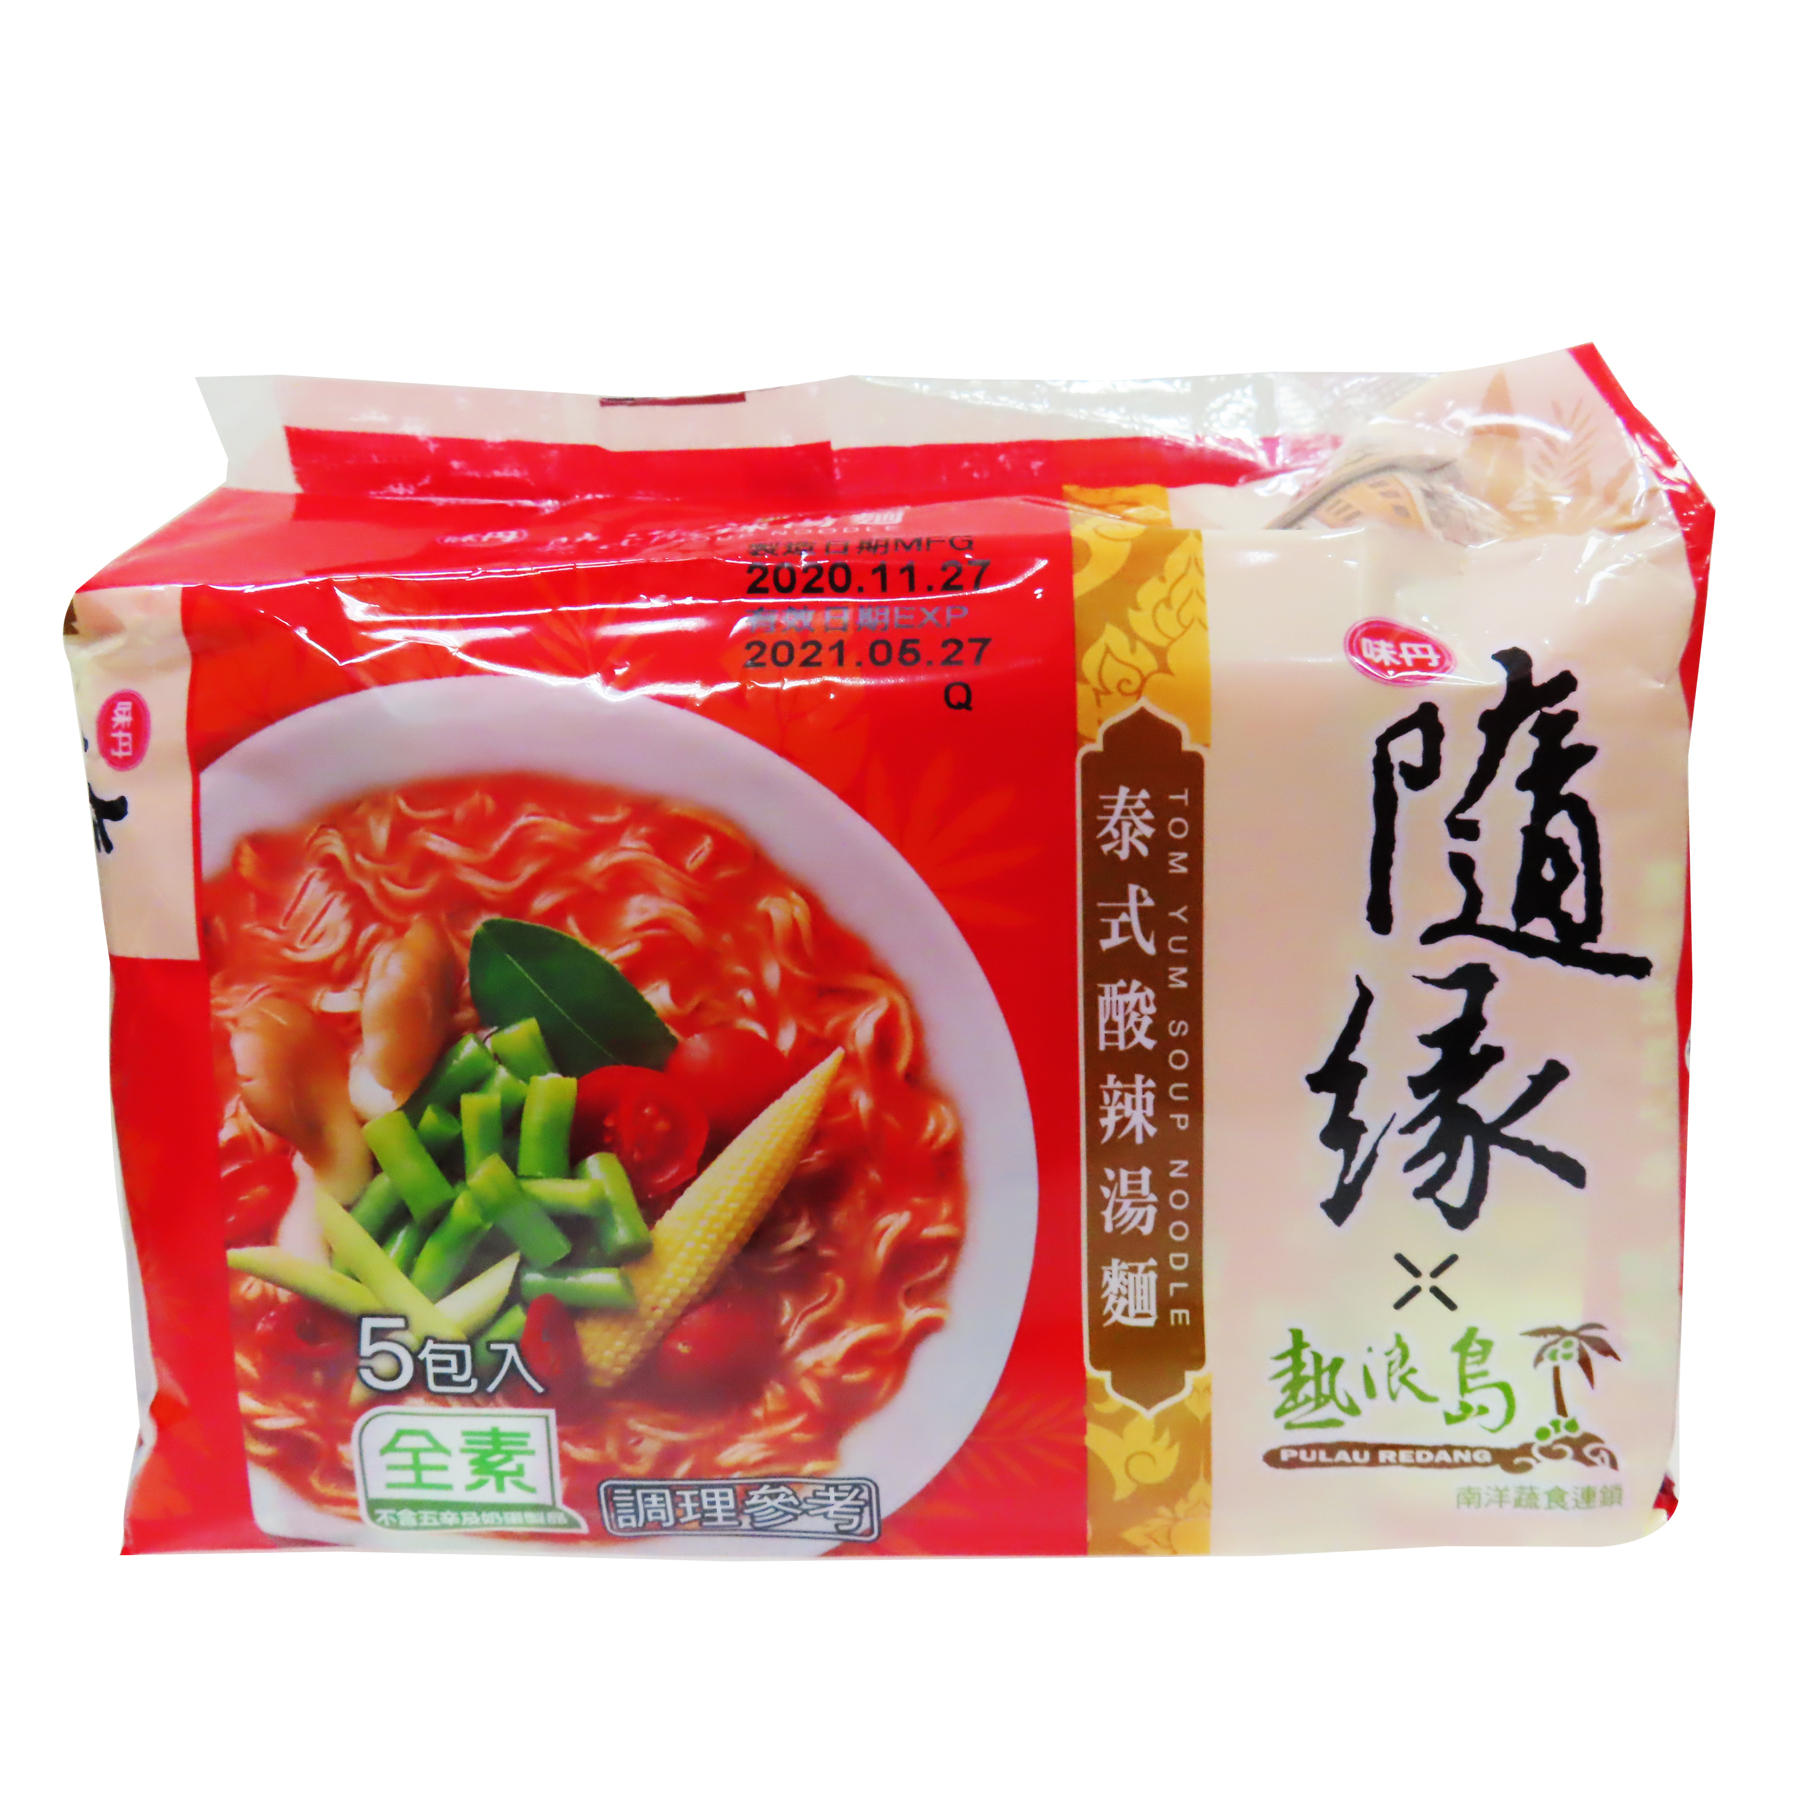 Image Tom Yum Soup Noodle 随缘 - 泰式酸辣汤面 430grams